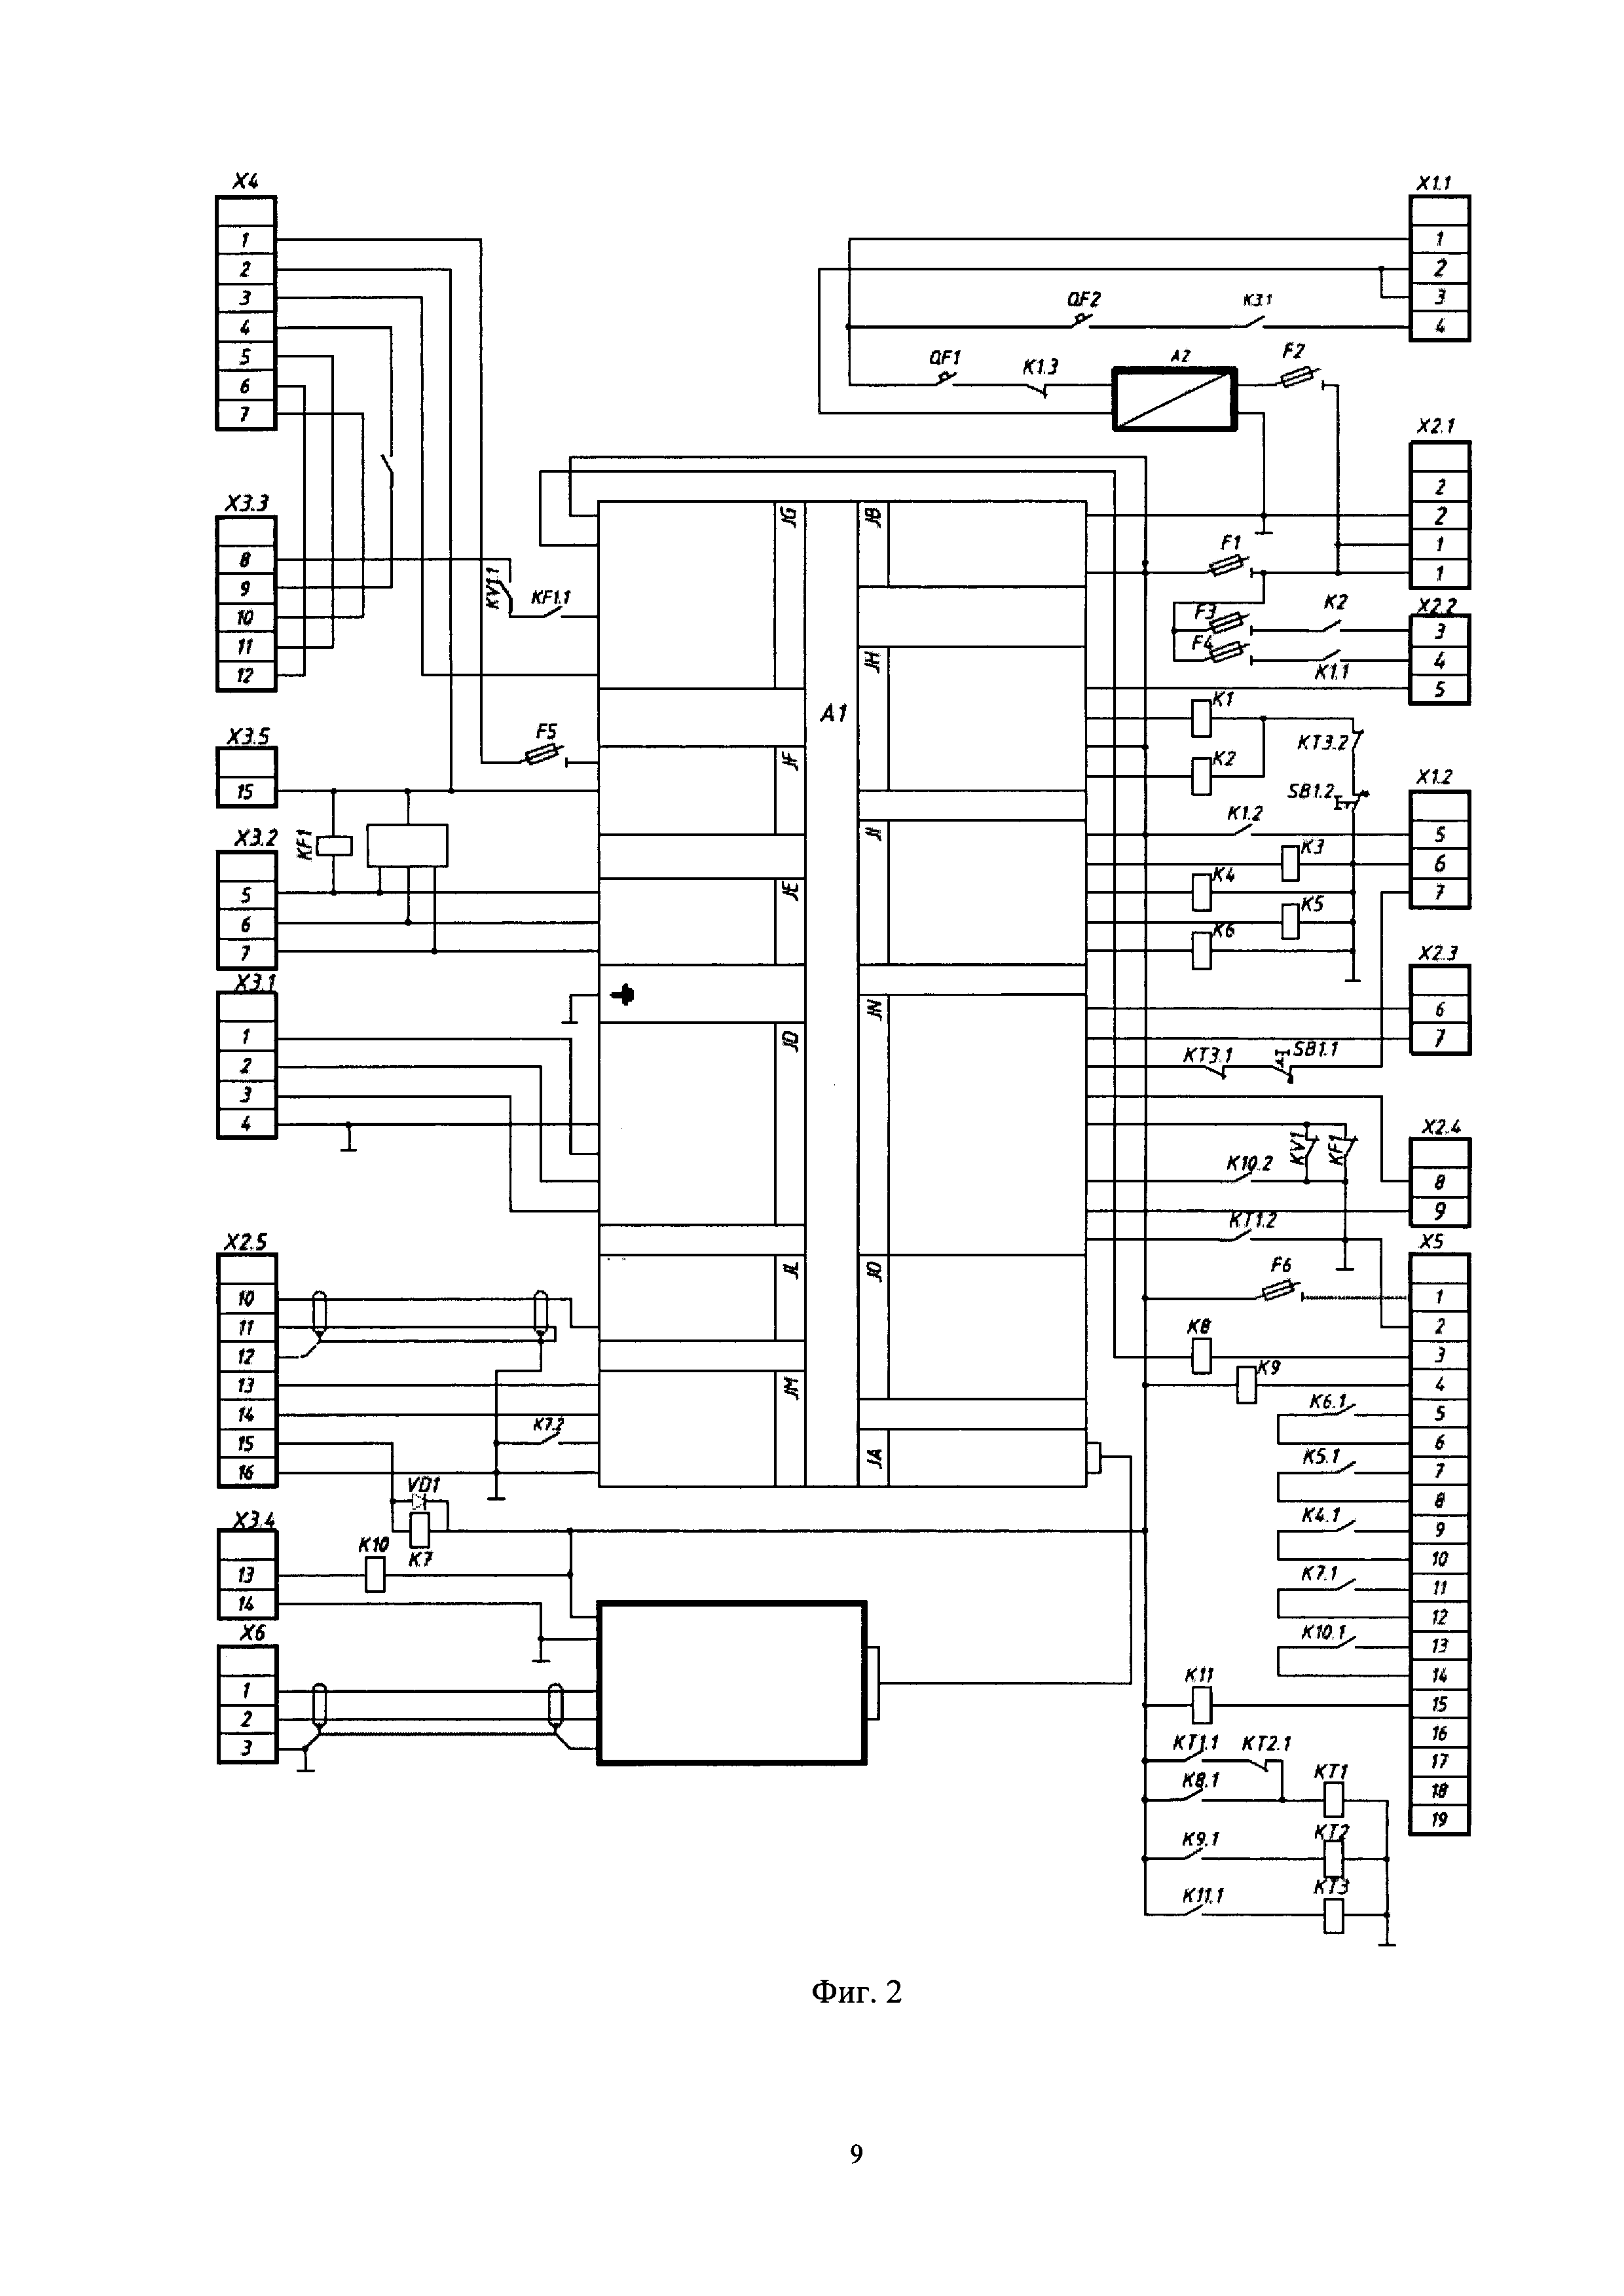 Электронная панель управления дизель-генераторным агрегатом (ЭПУ ДГА)